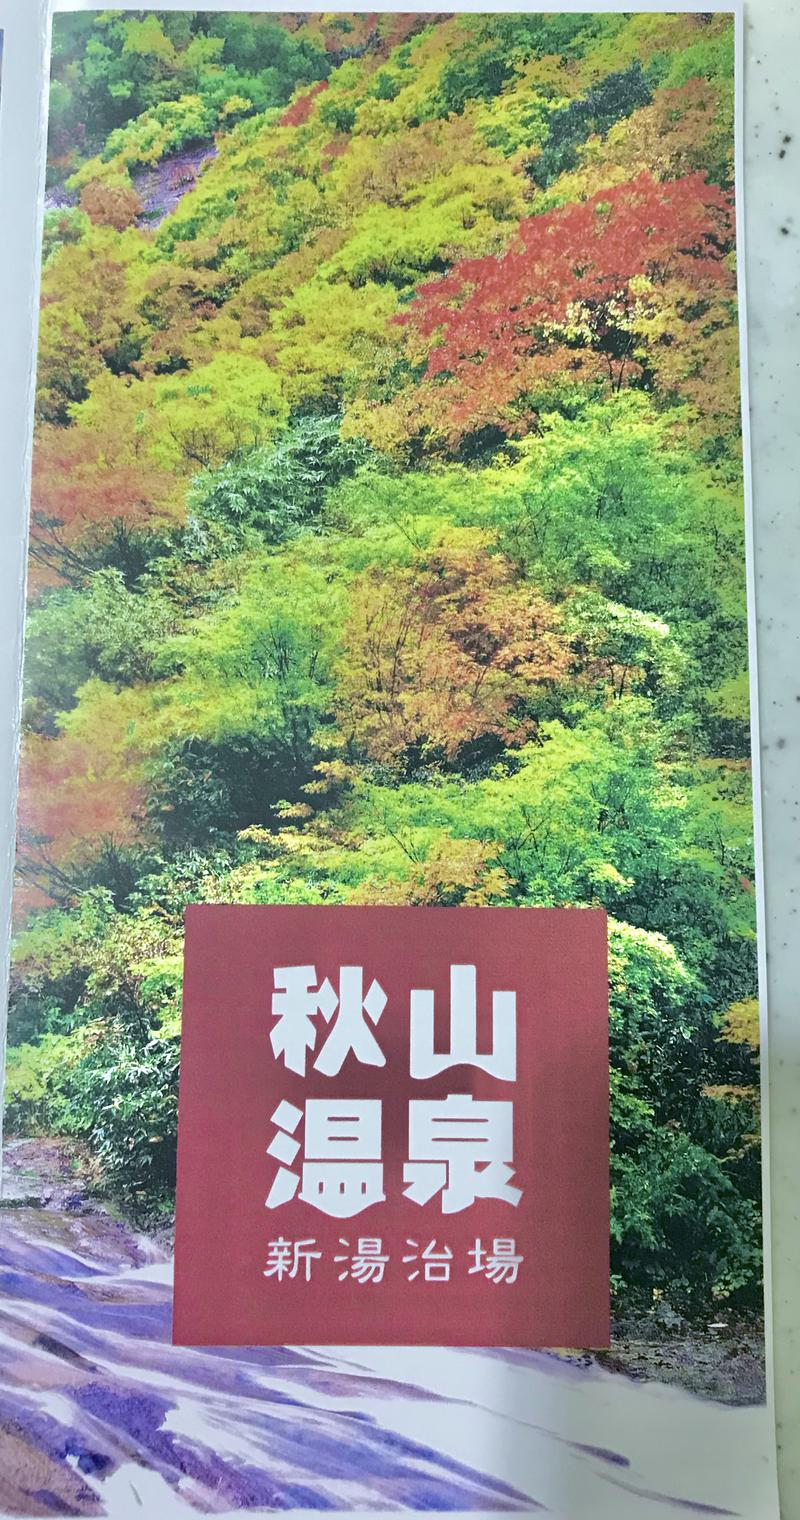 あまみ　みなもさんの秋山温泉のサ活写真